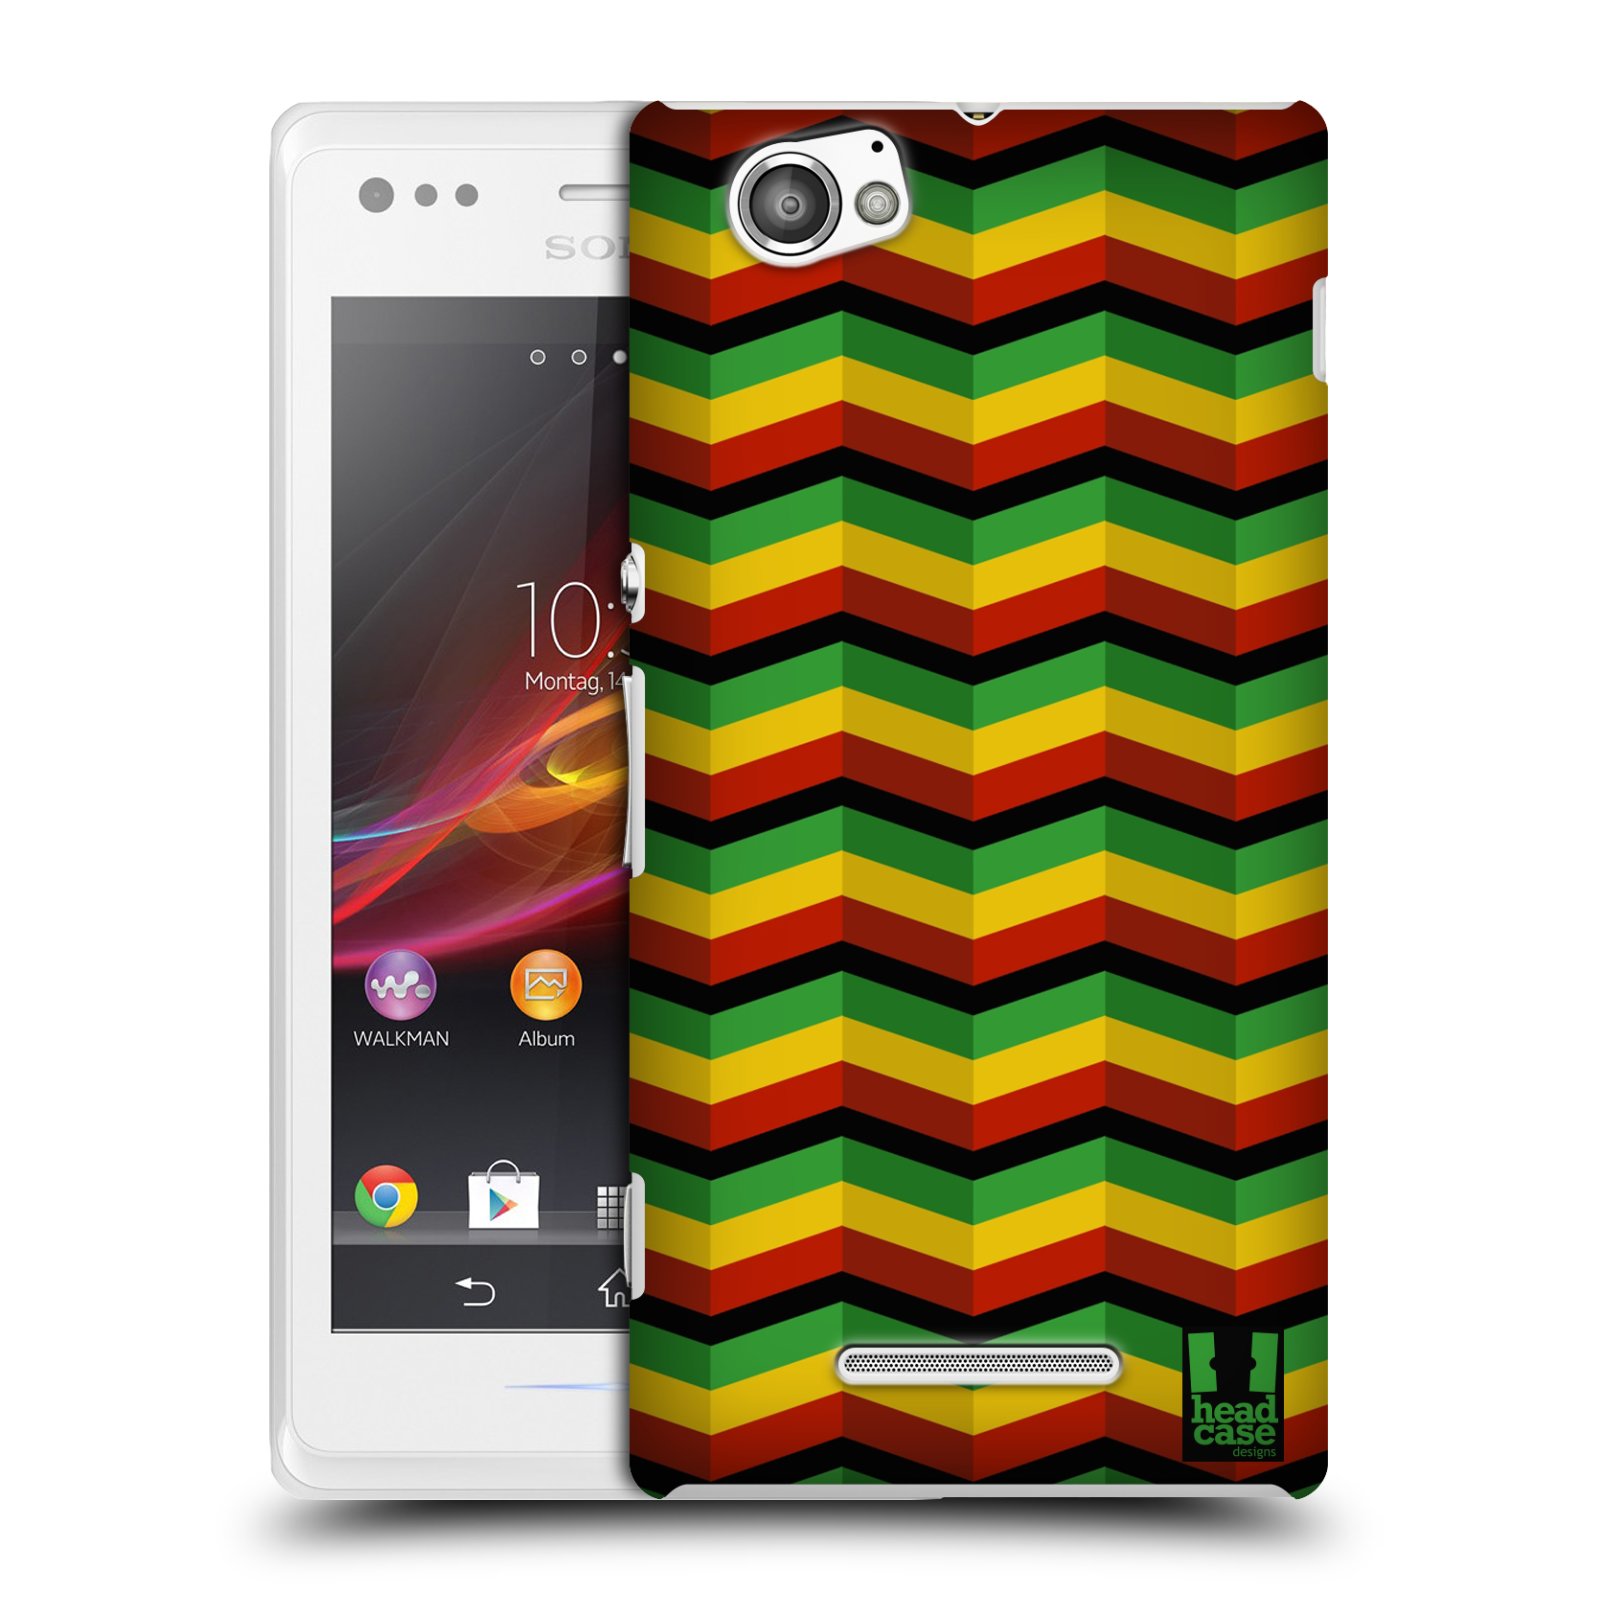 HEAD CASE plastový obal na mobil Sony Xperia M vzor Rasta barevné vzory CHEVRON